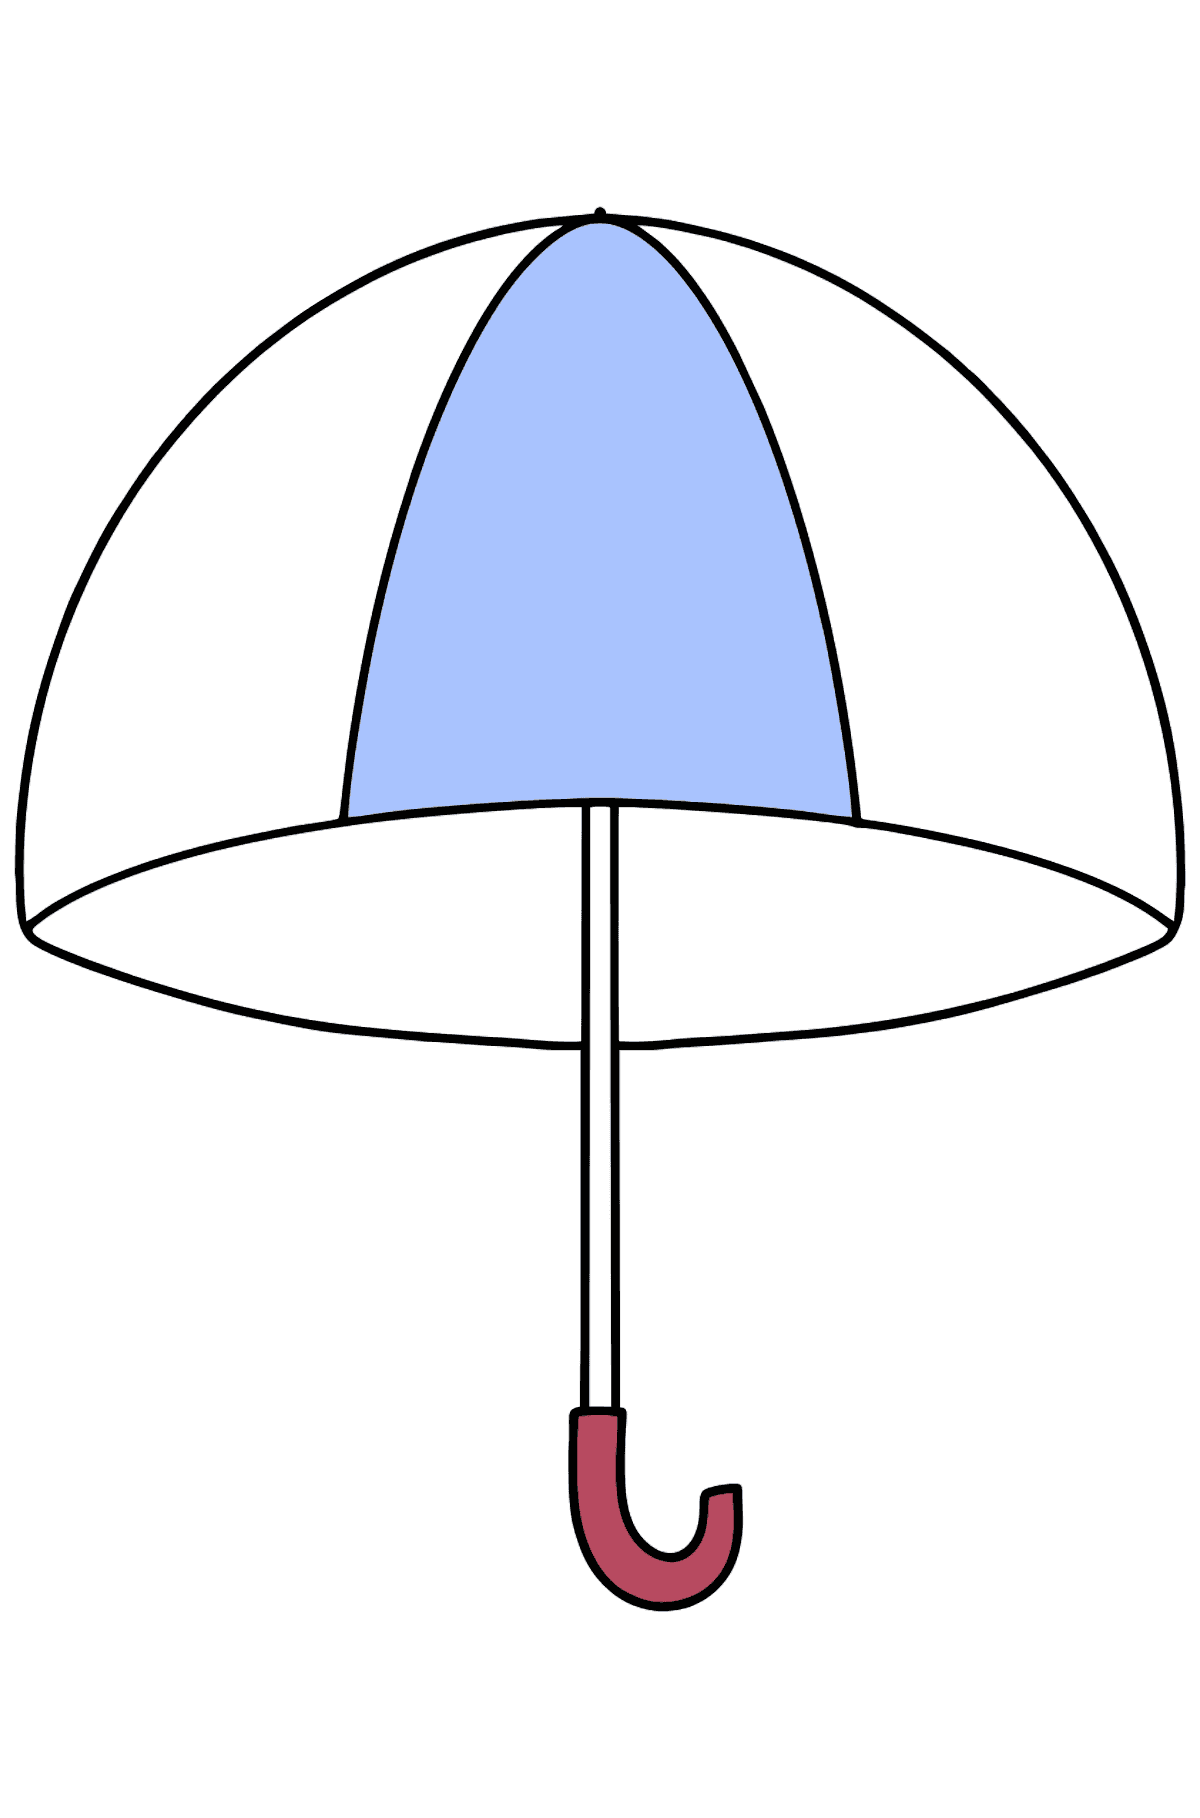 Раскраска зонтик - Картинки для Детей